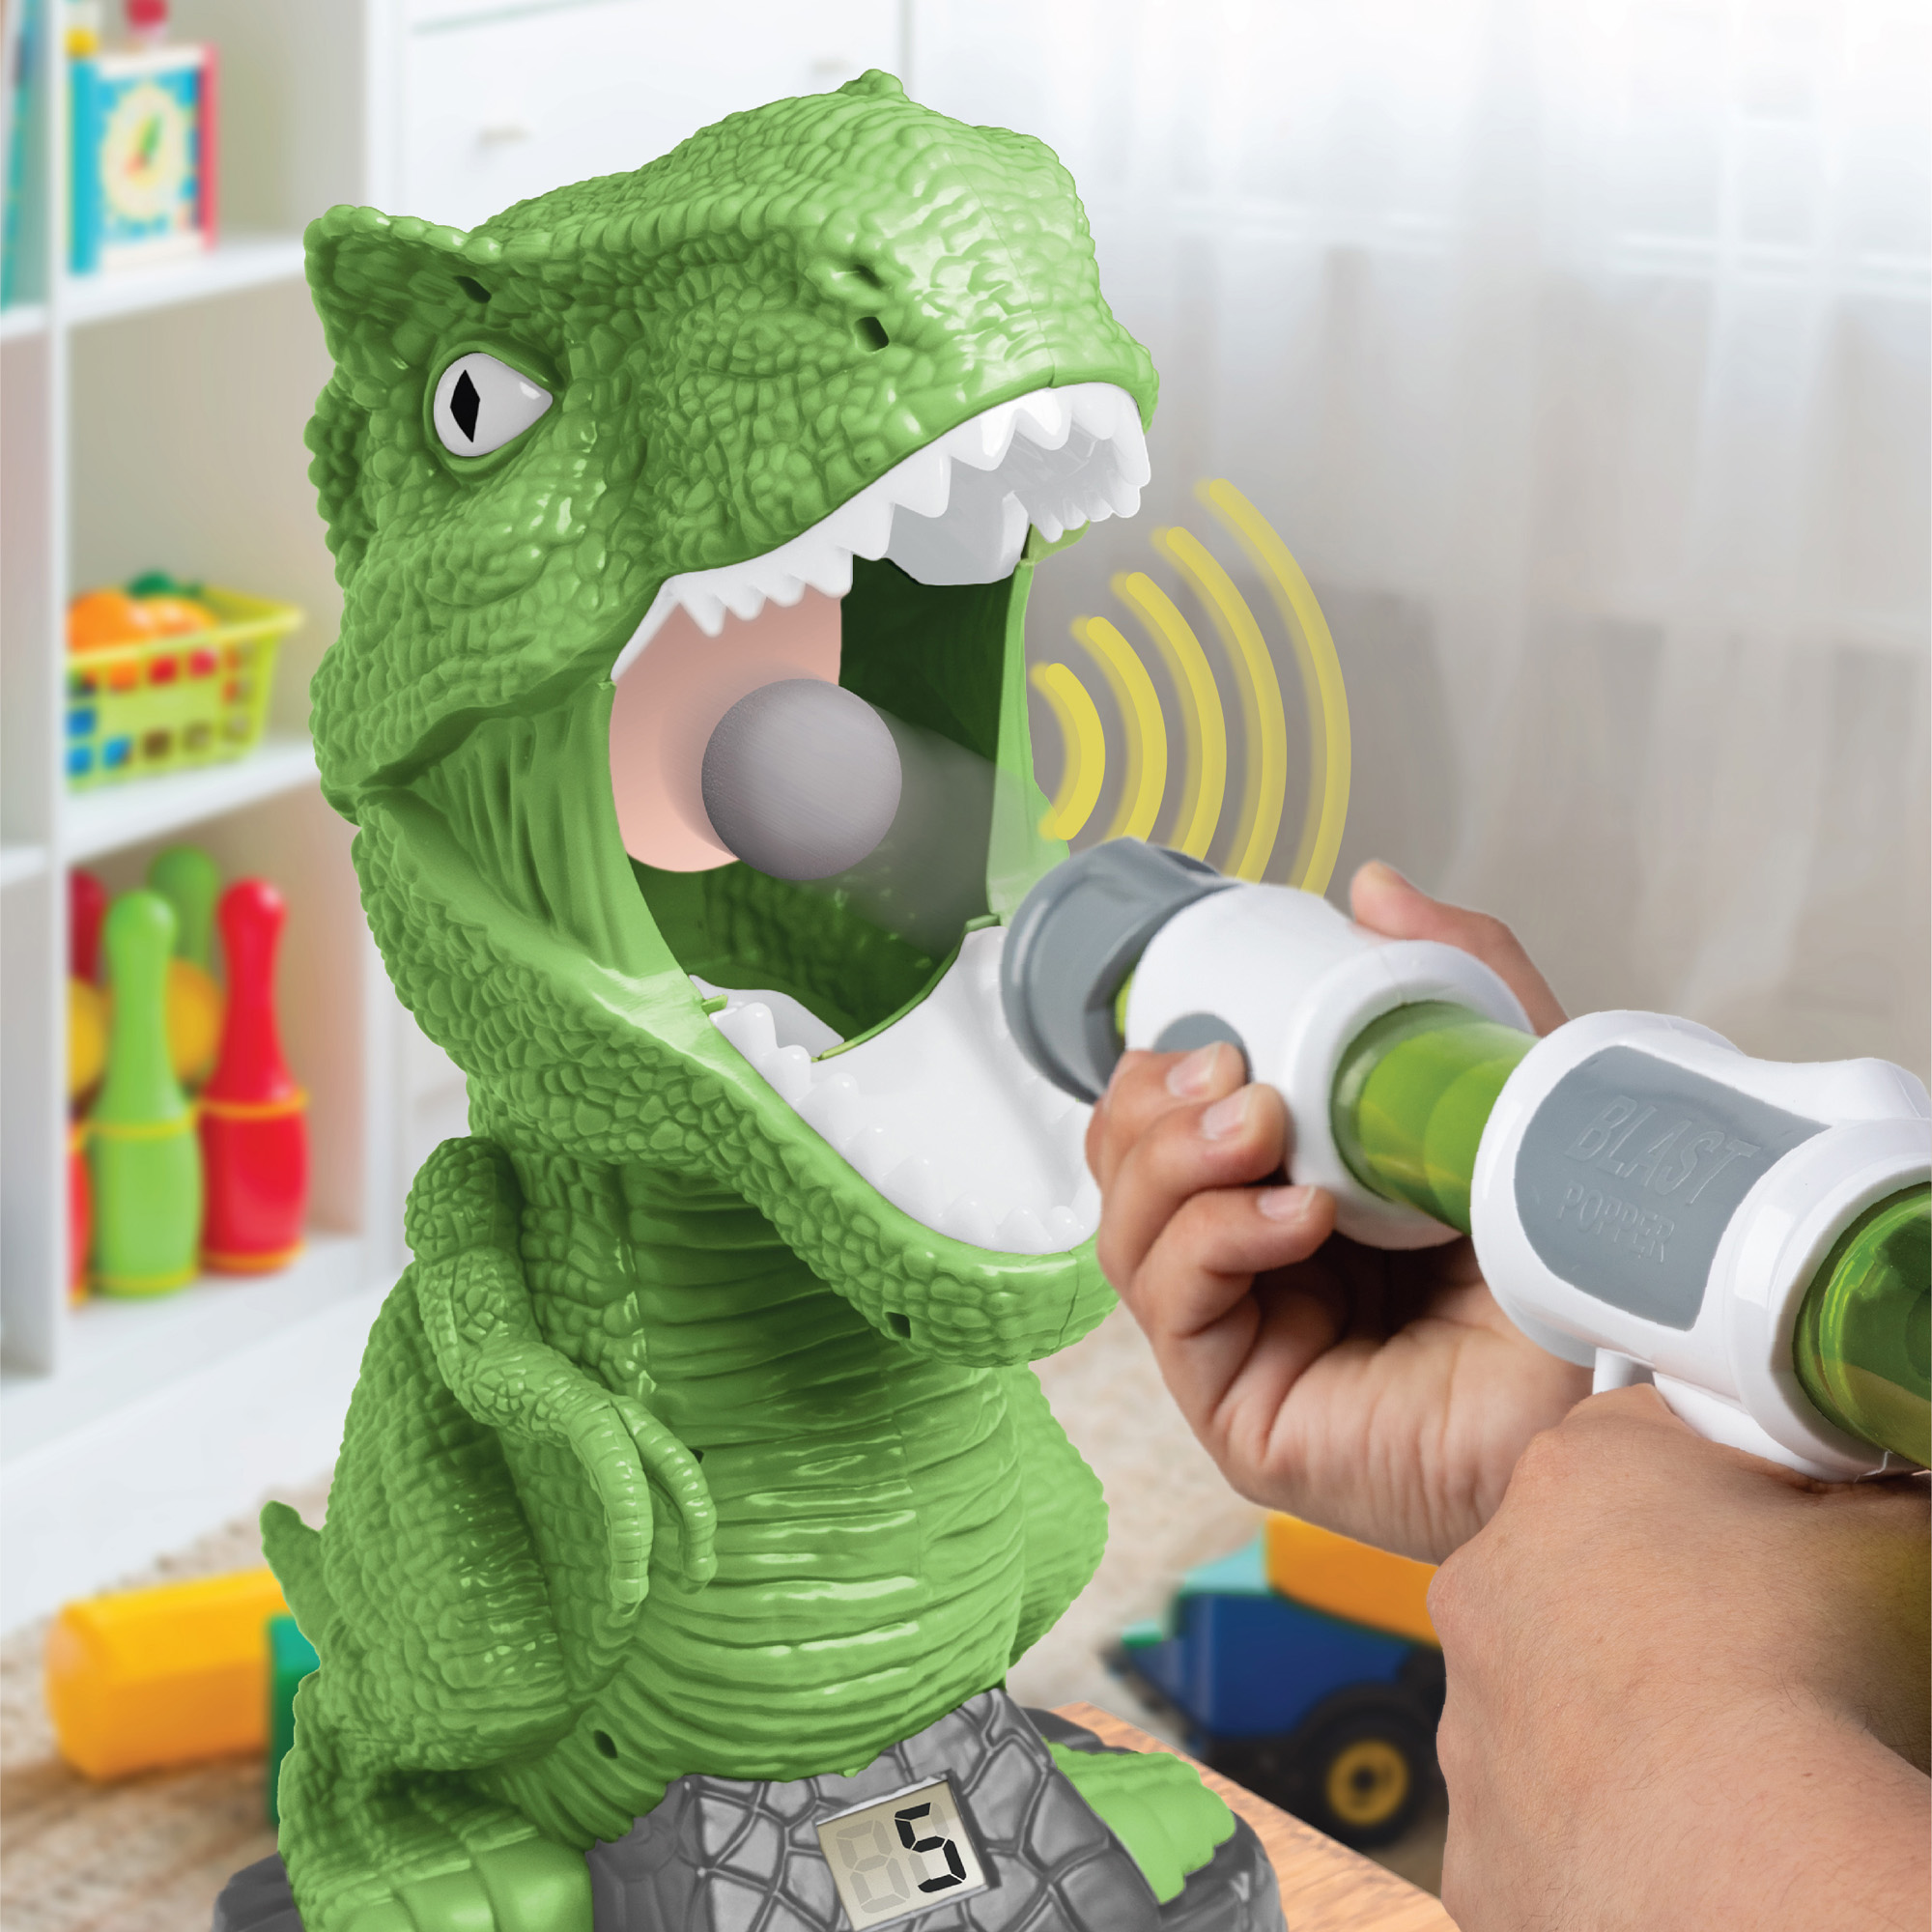 Gioco interattivo dai da mangiare al t-rex - Discovery Toys